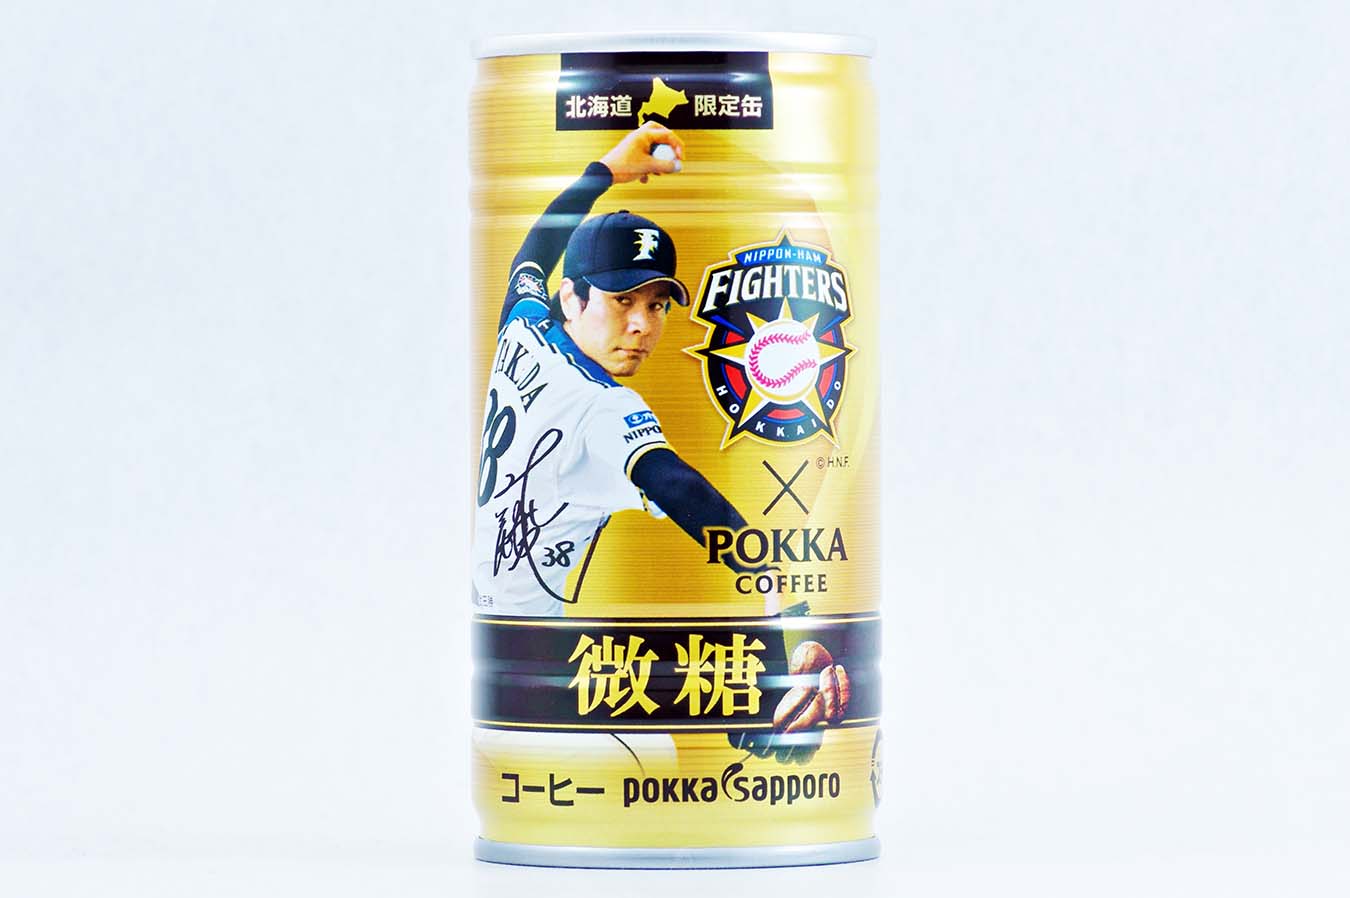 ポッカコーヒー ファイターズ選手缶微糖 武田勝 2015年6月